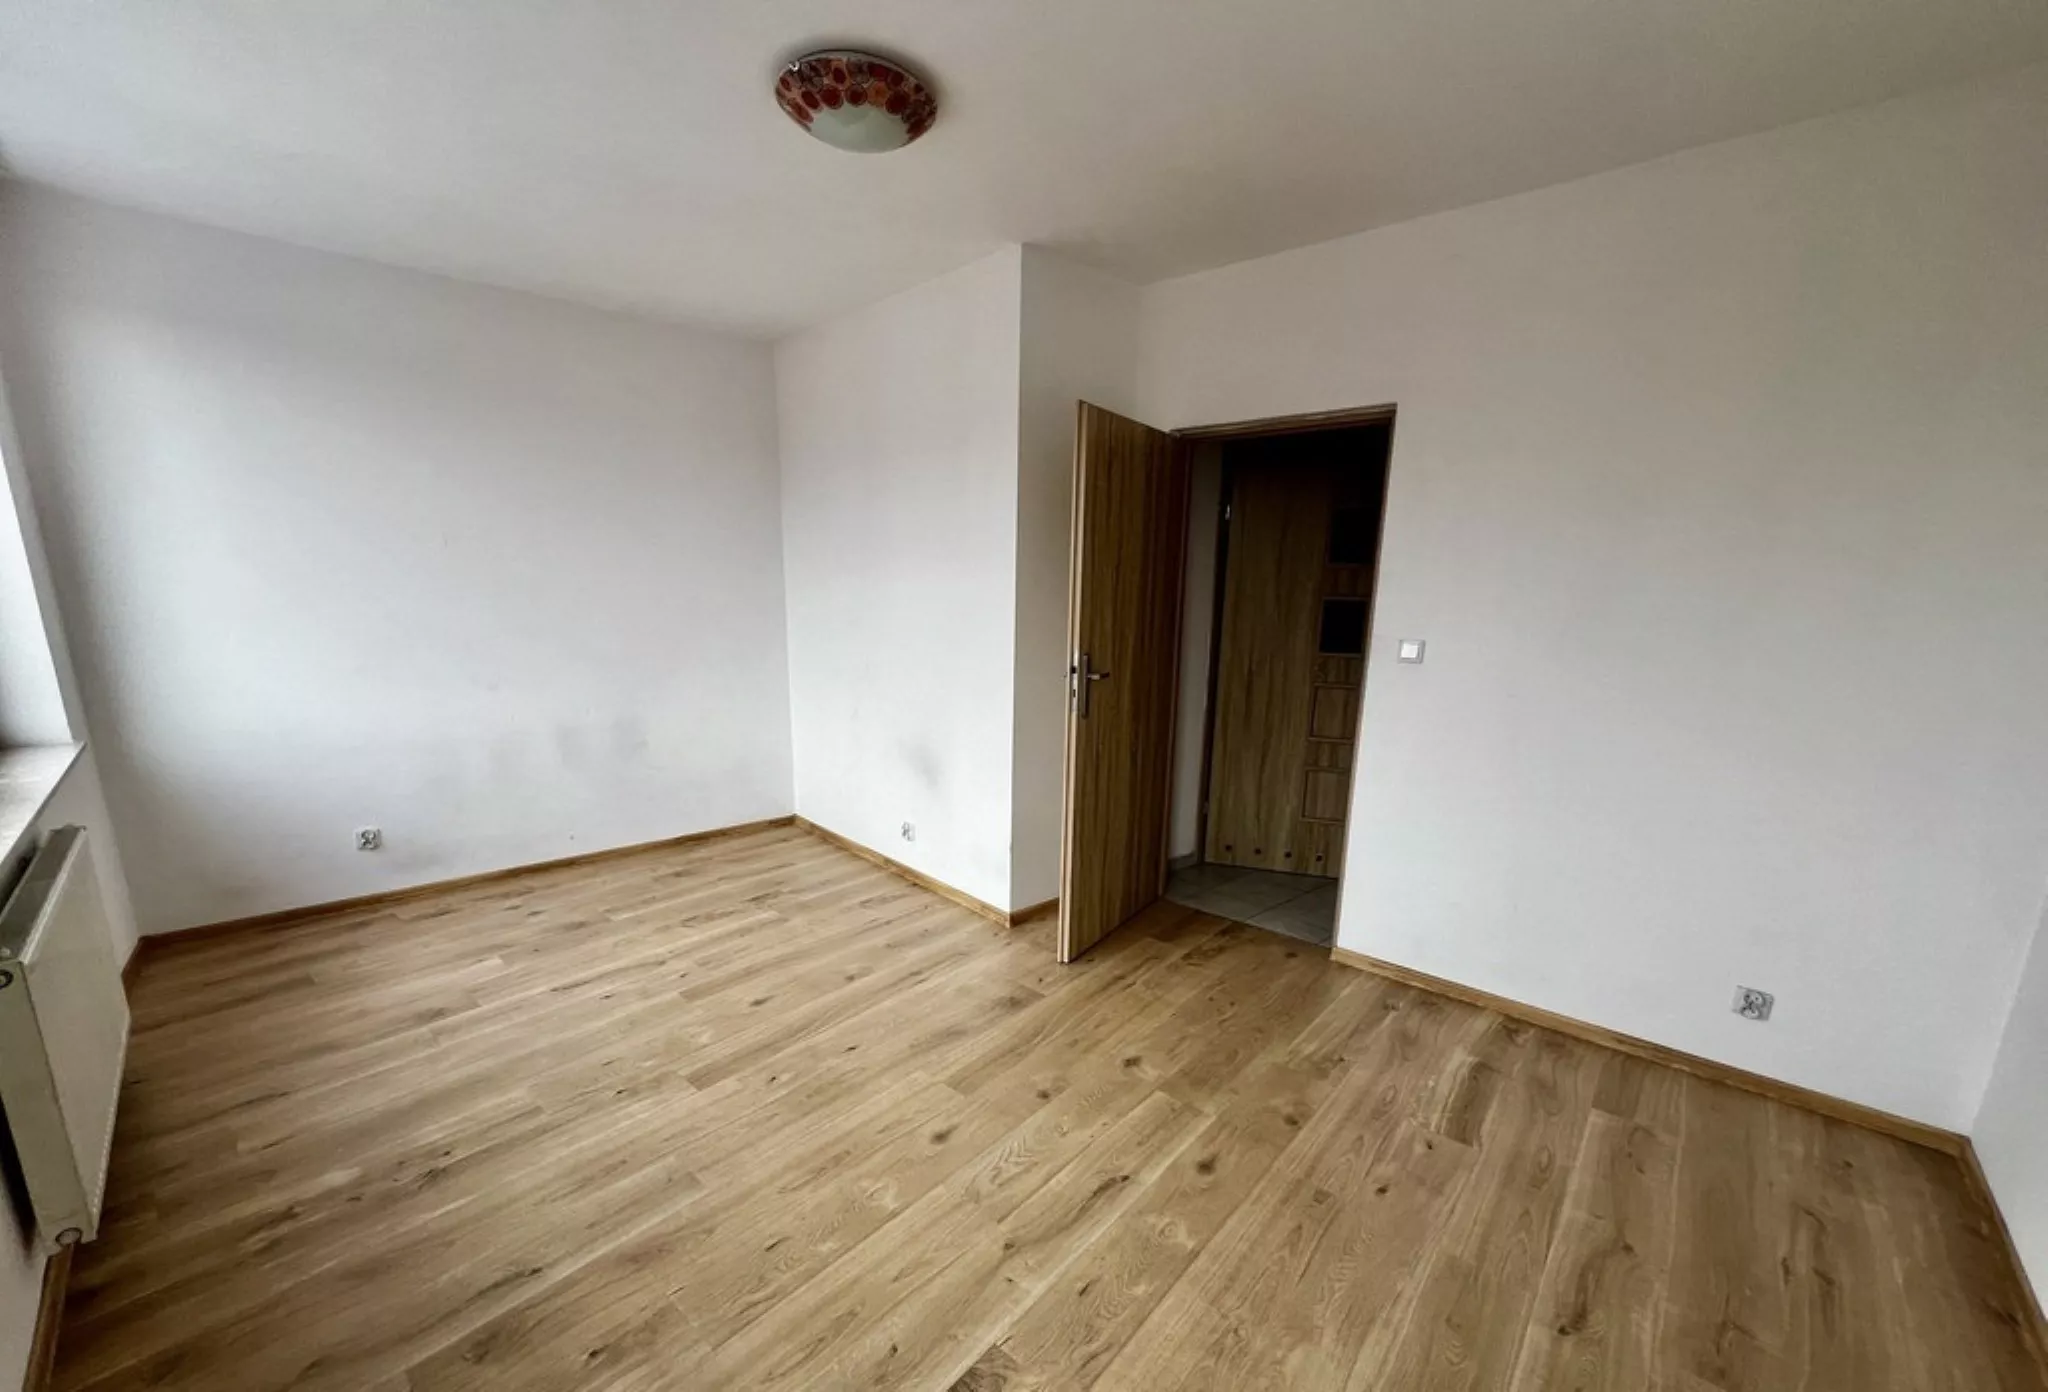 Dębniki, 2 pokoje, mieszkanie sprzedam - Mieszkanie na sprzedaż Kraków